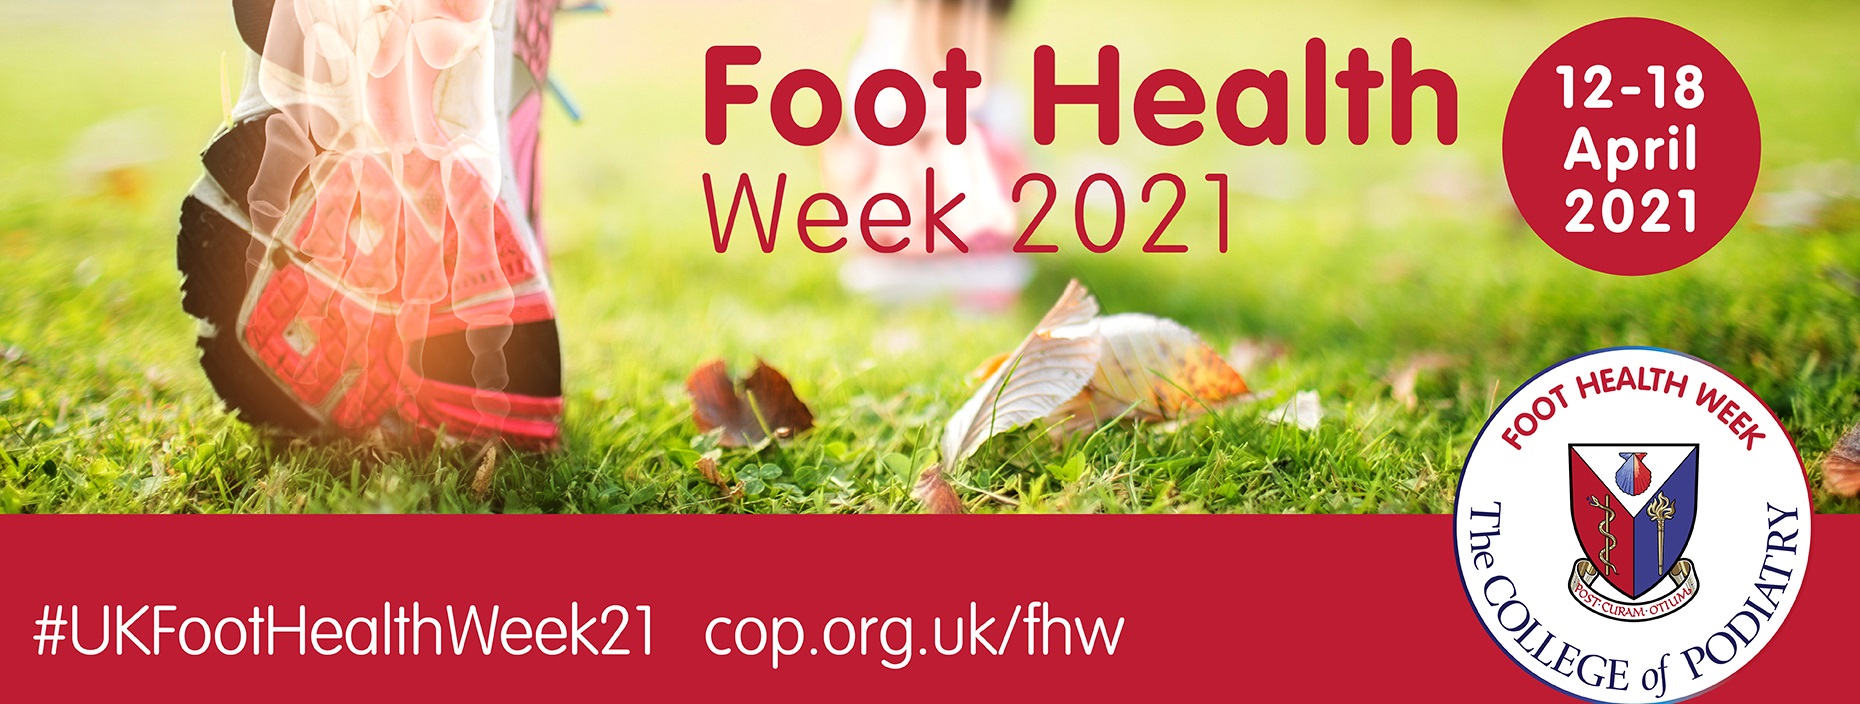 foot health week